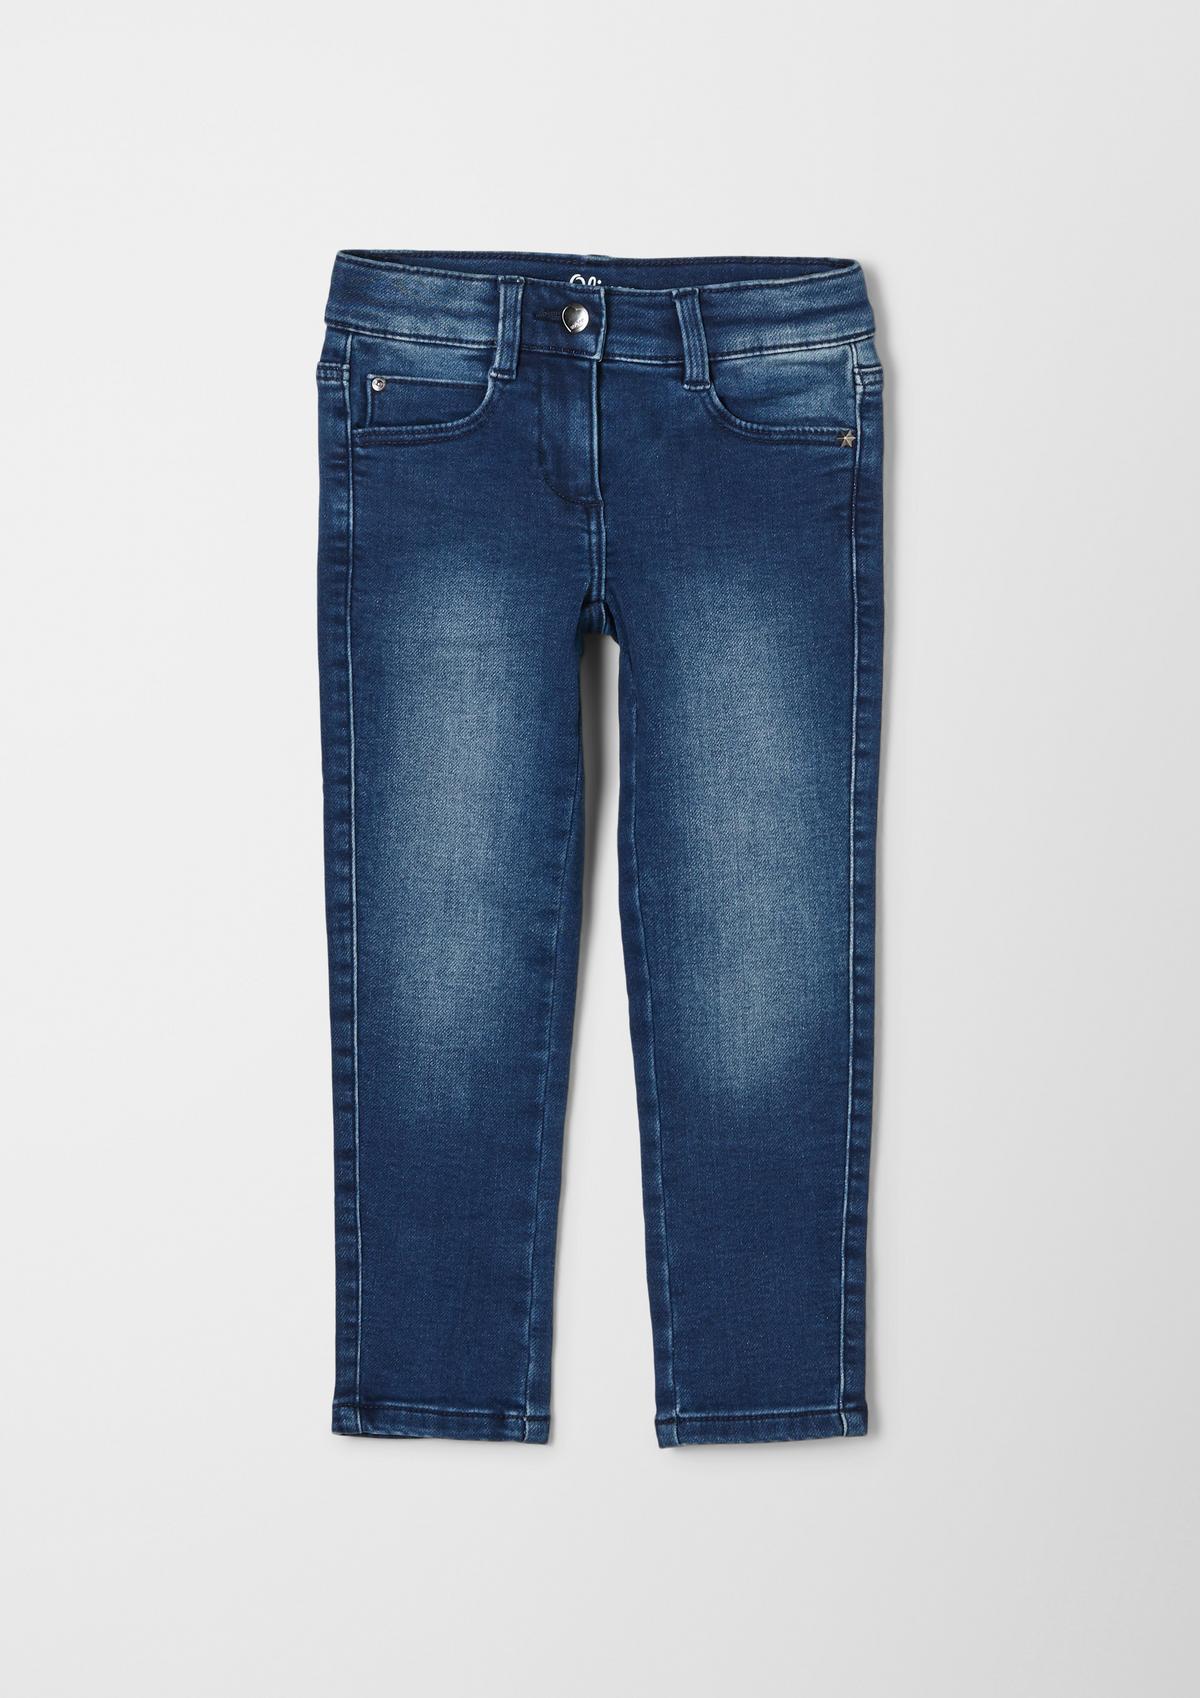 s.Oliver Regular: jeans hlače s potiskom po celotni površini